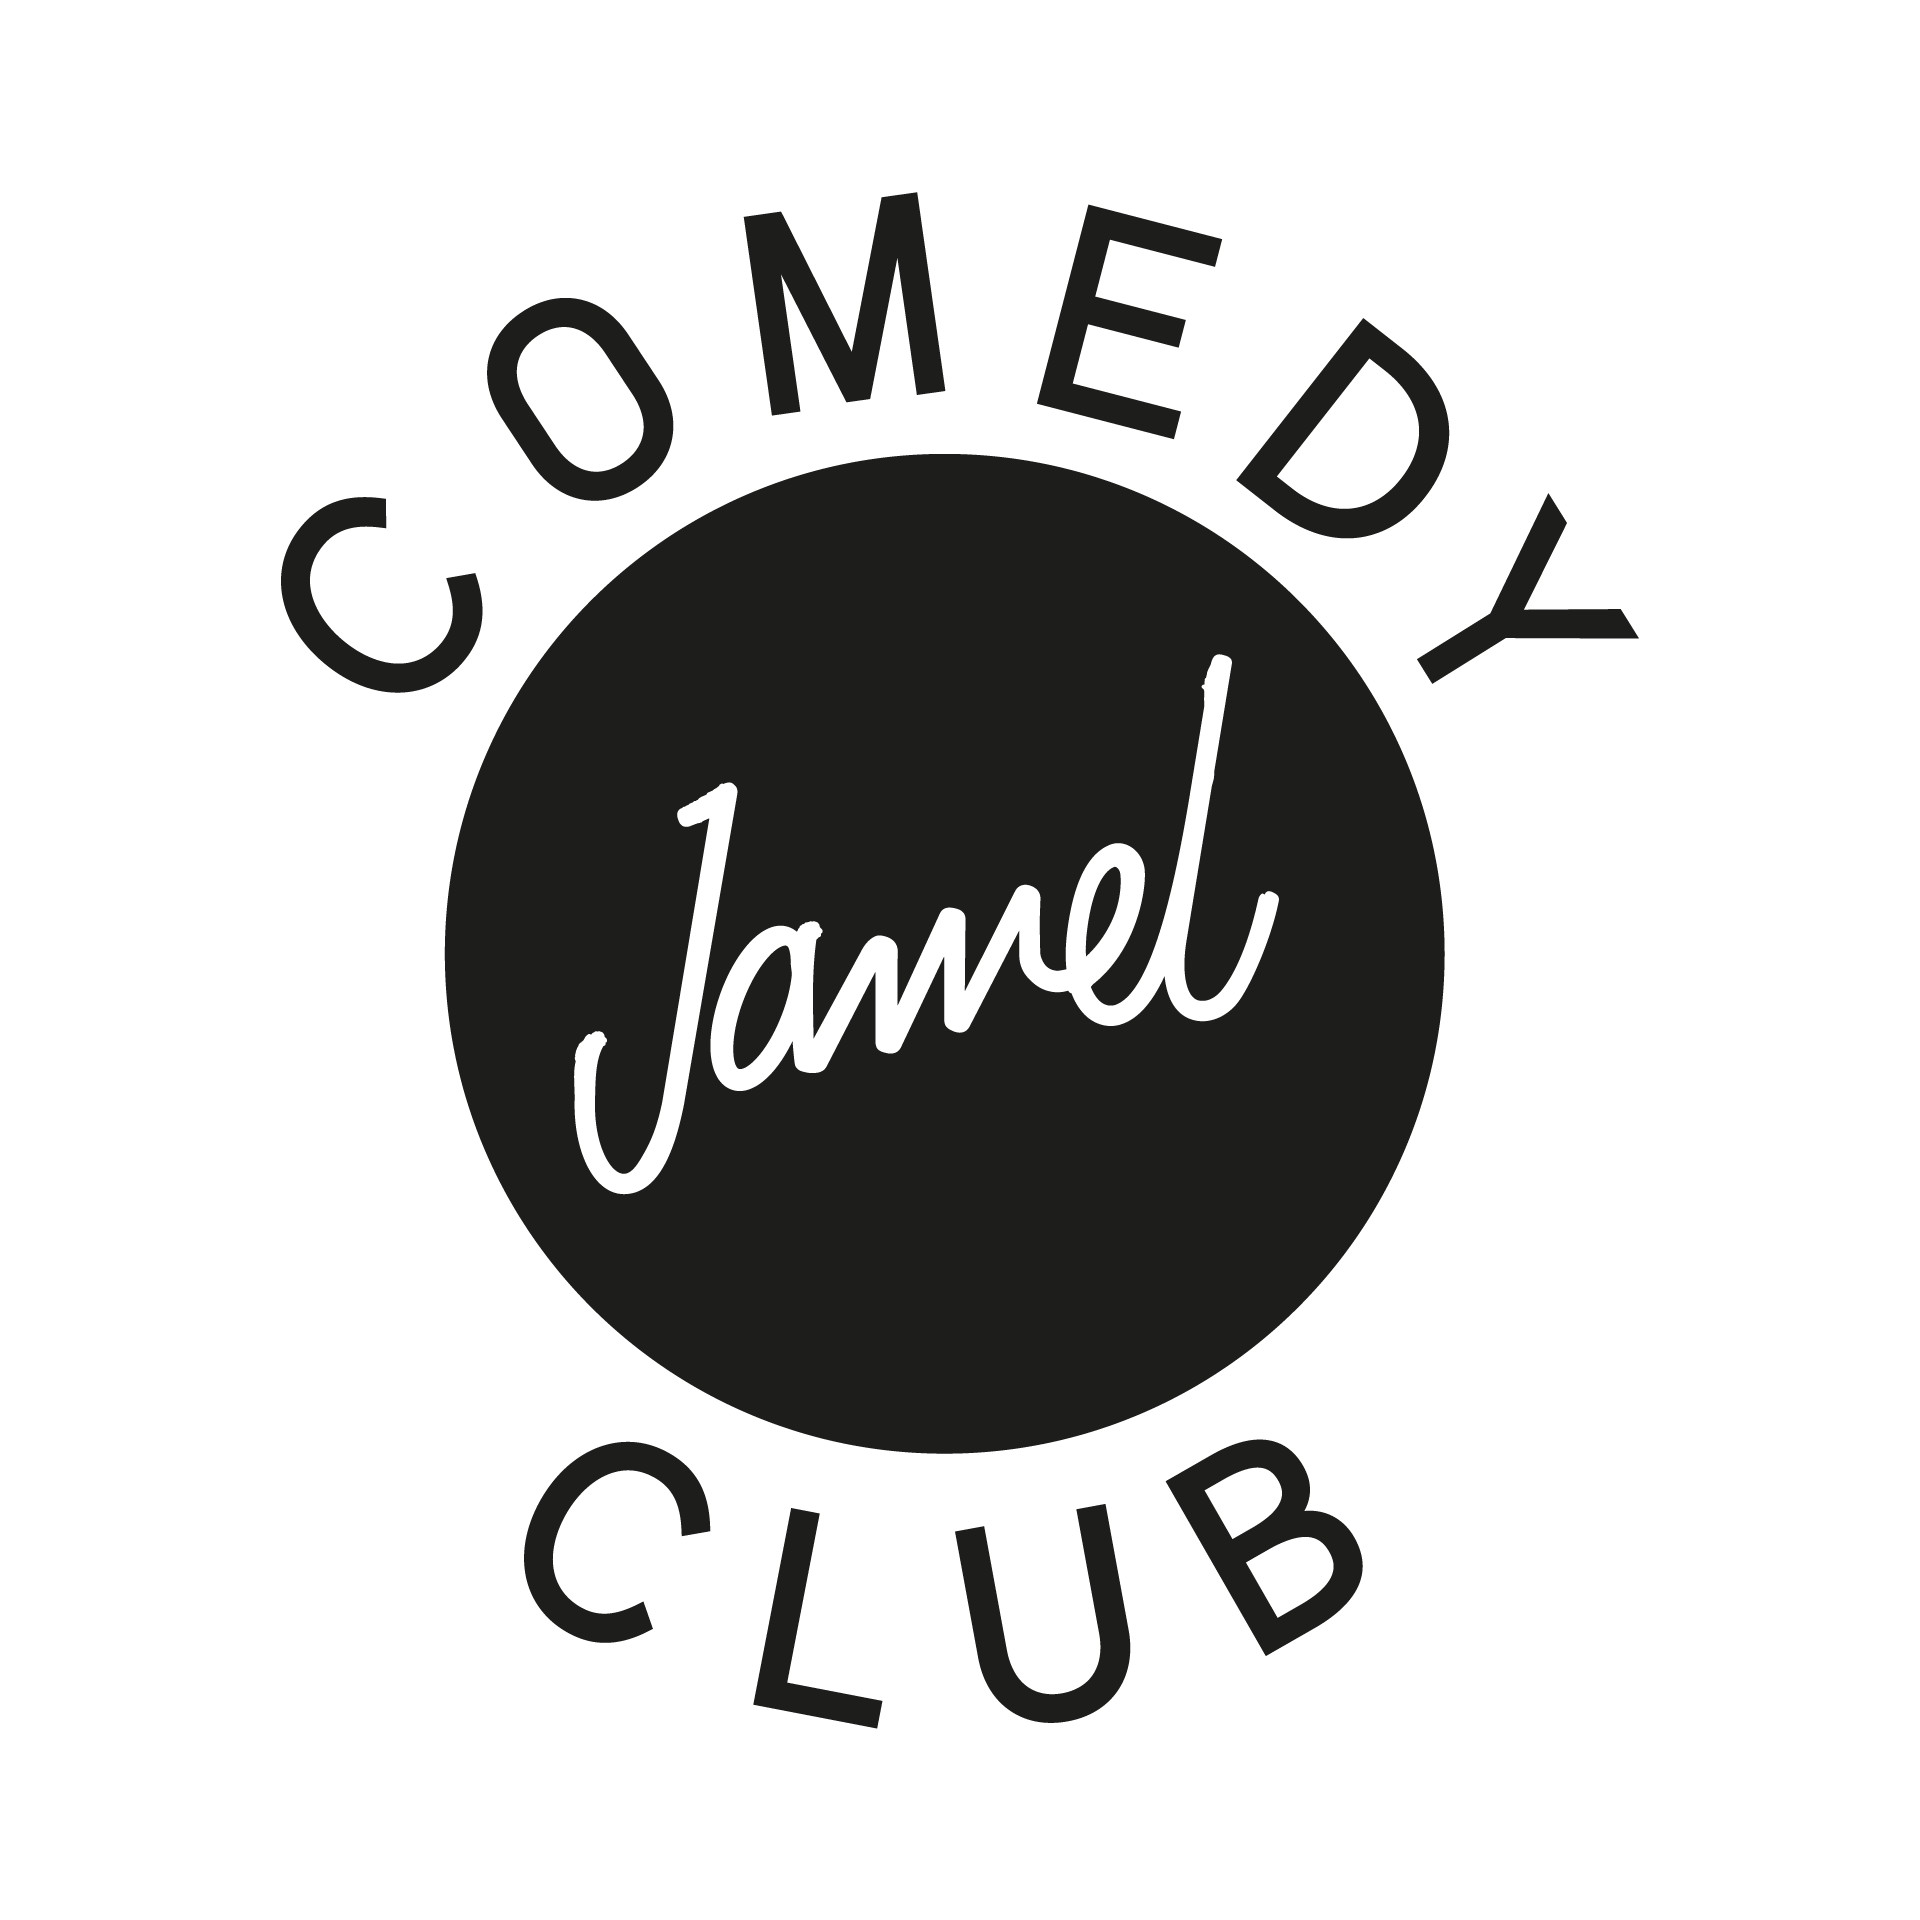 Jamel Comedy Club - Paris